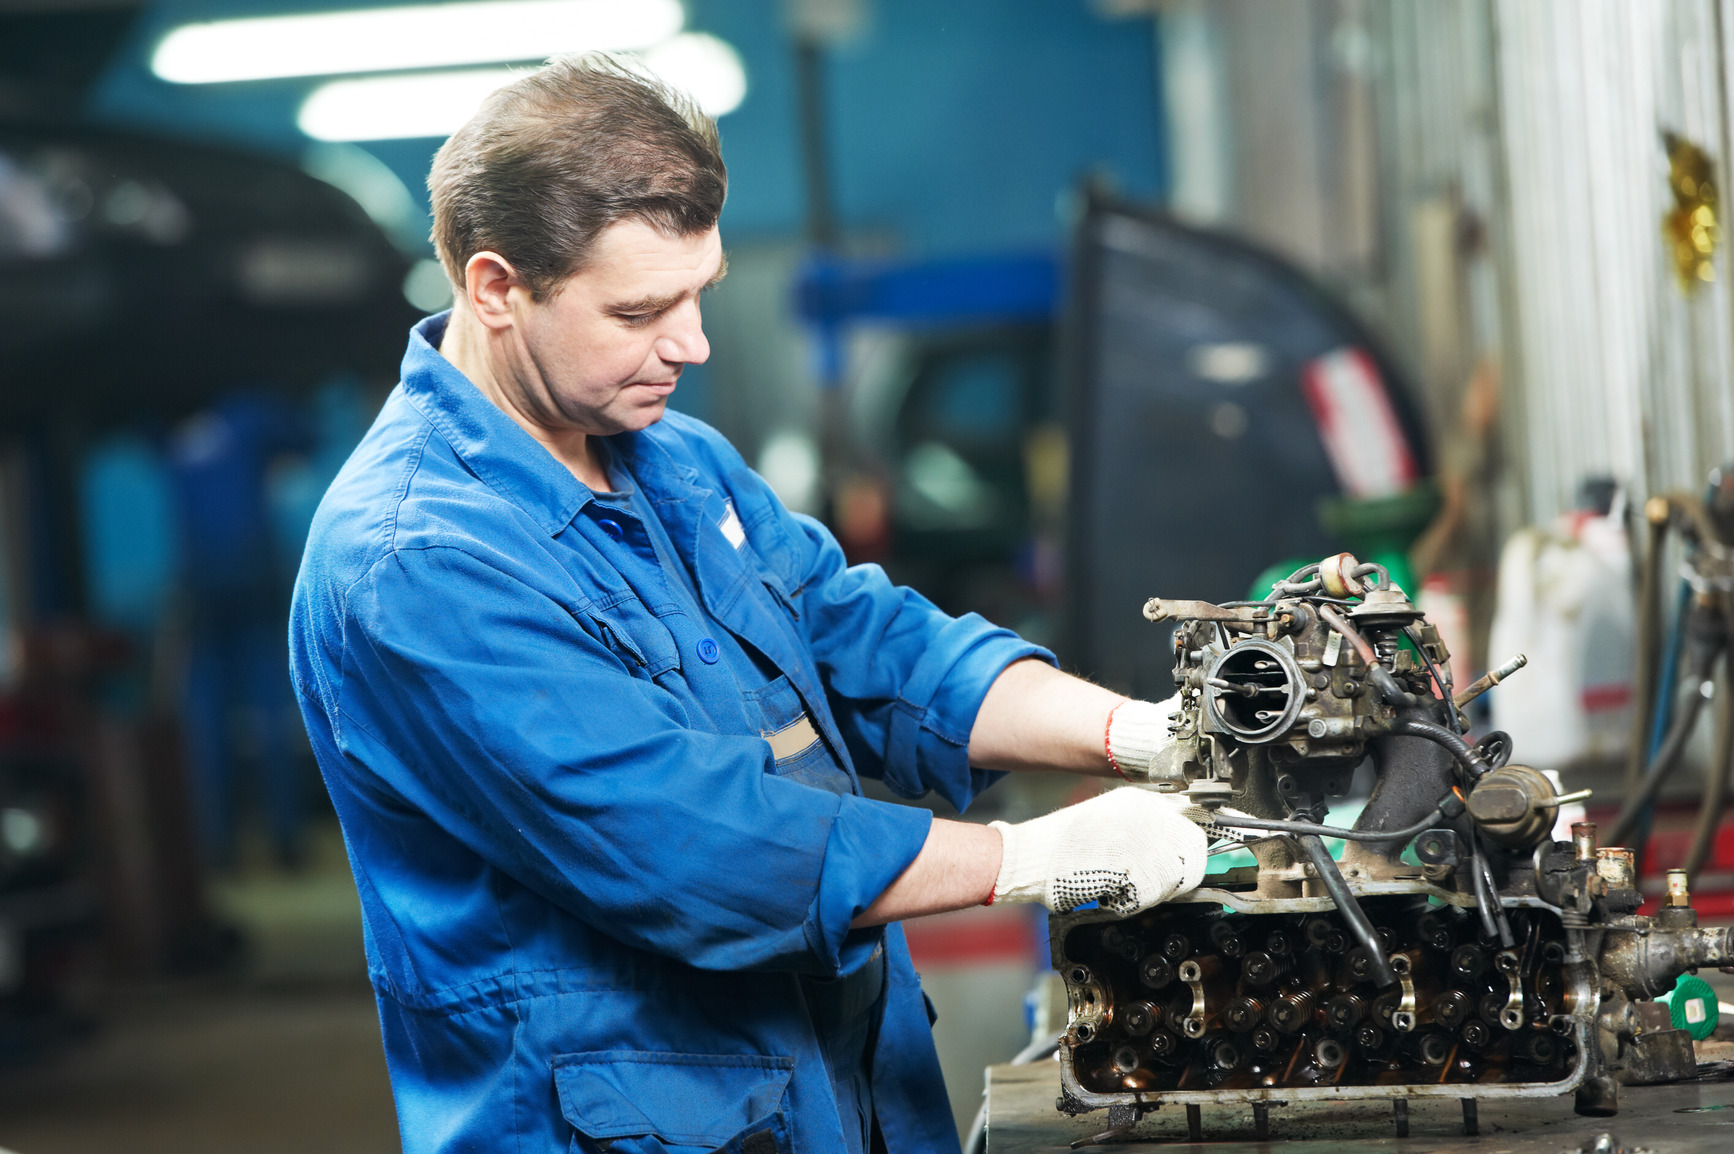 Защита двигателя Минск: как недорого и качественно обезопасить свой автомобиль?